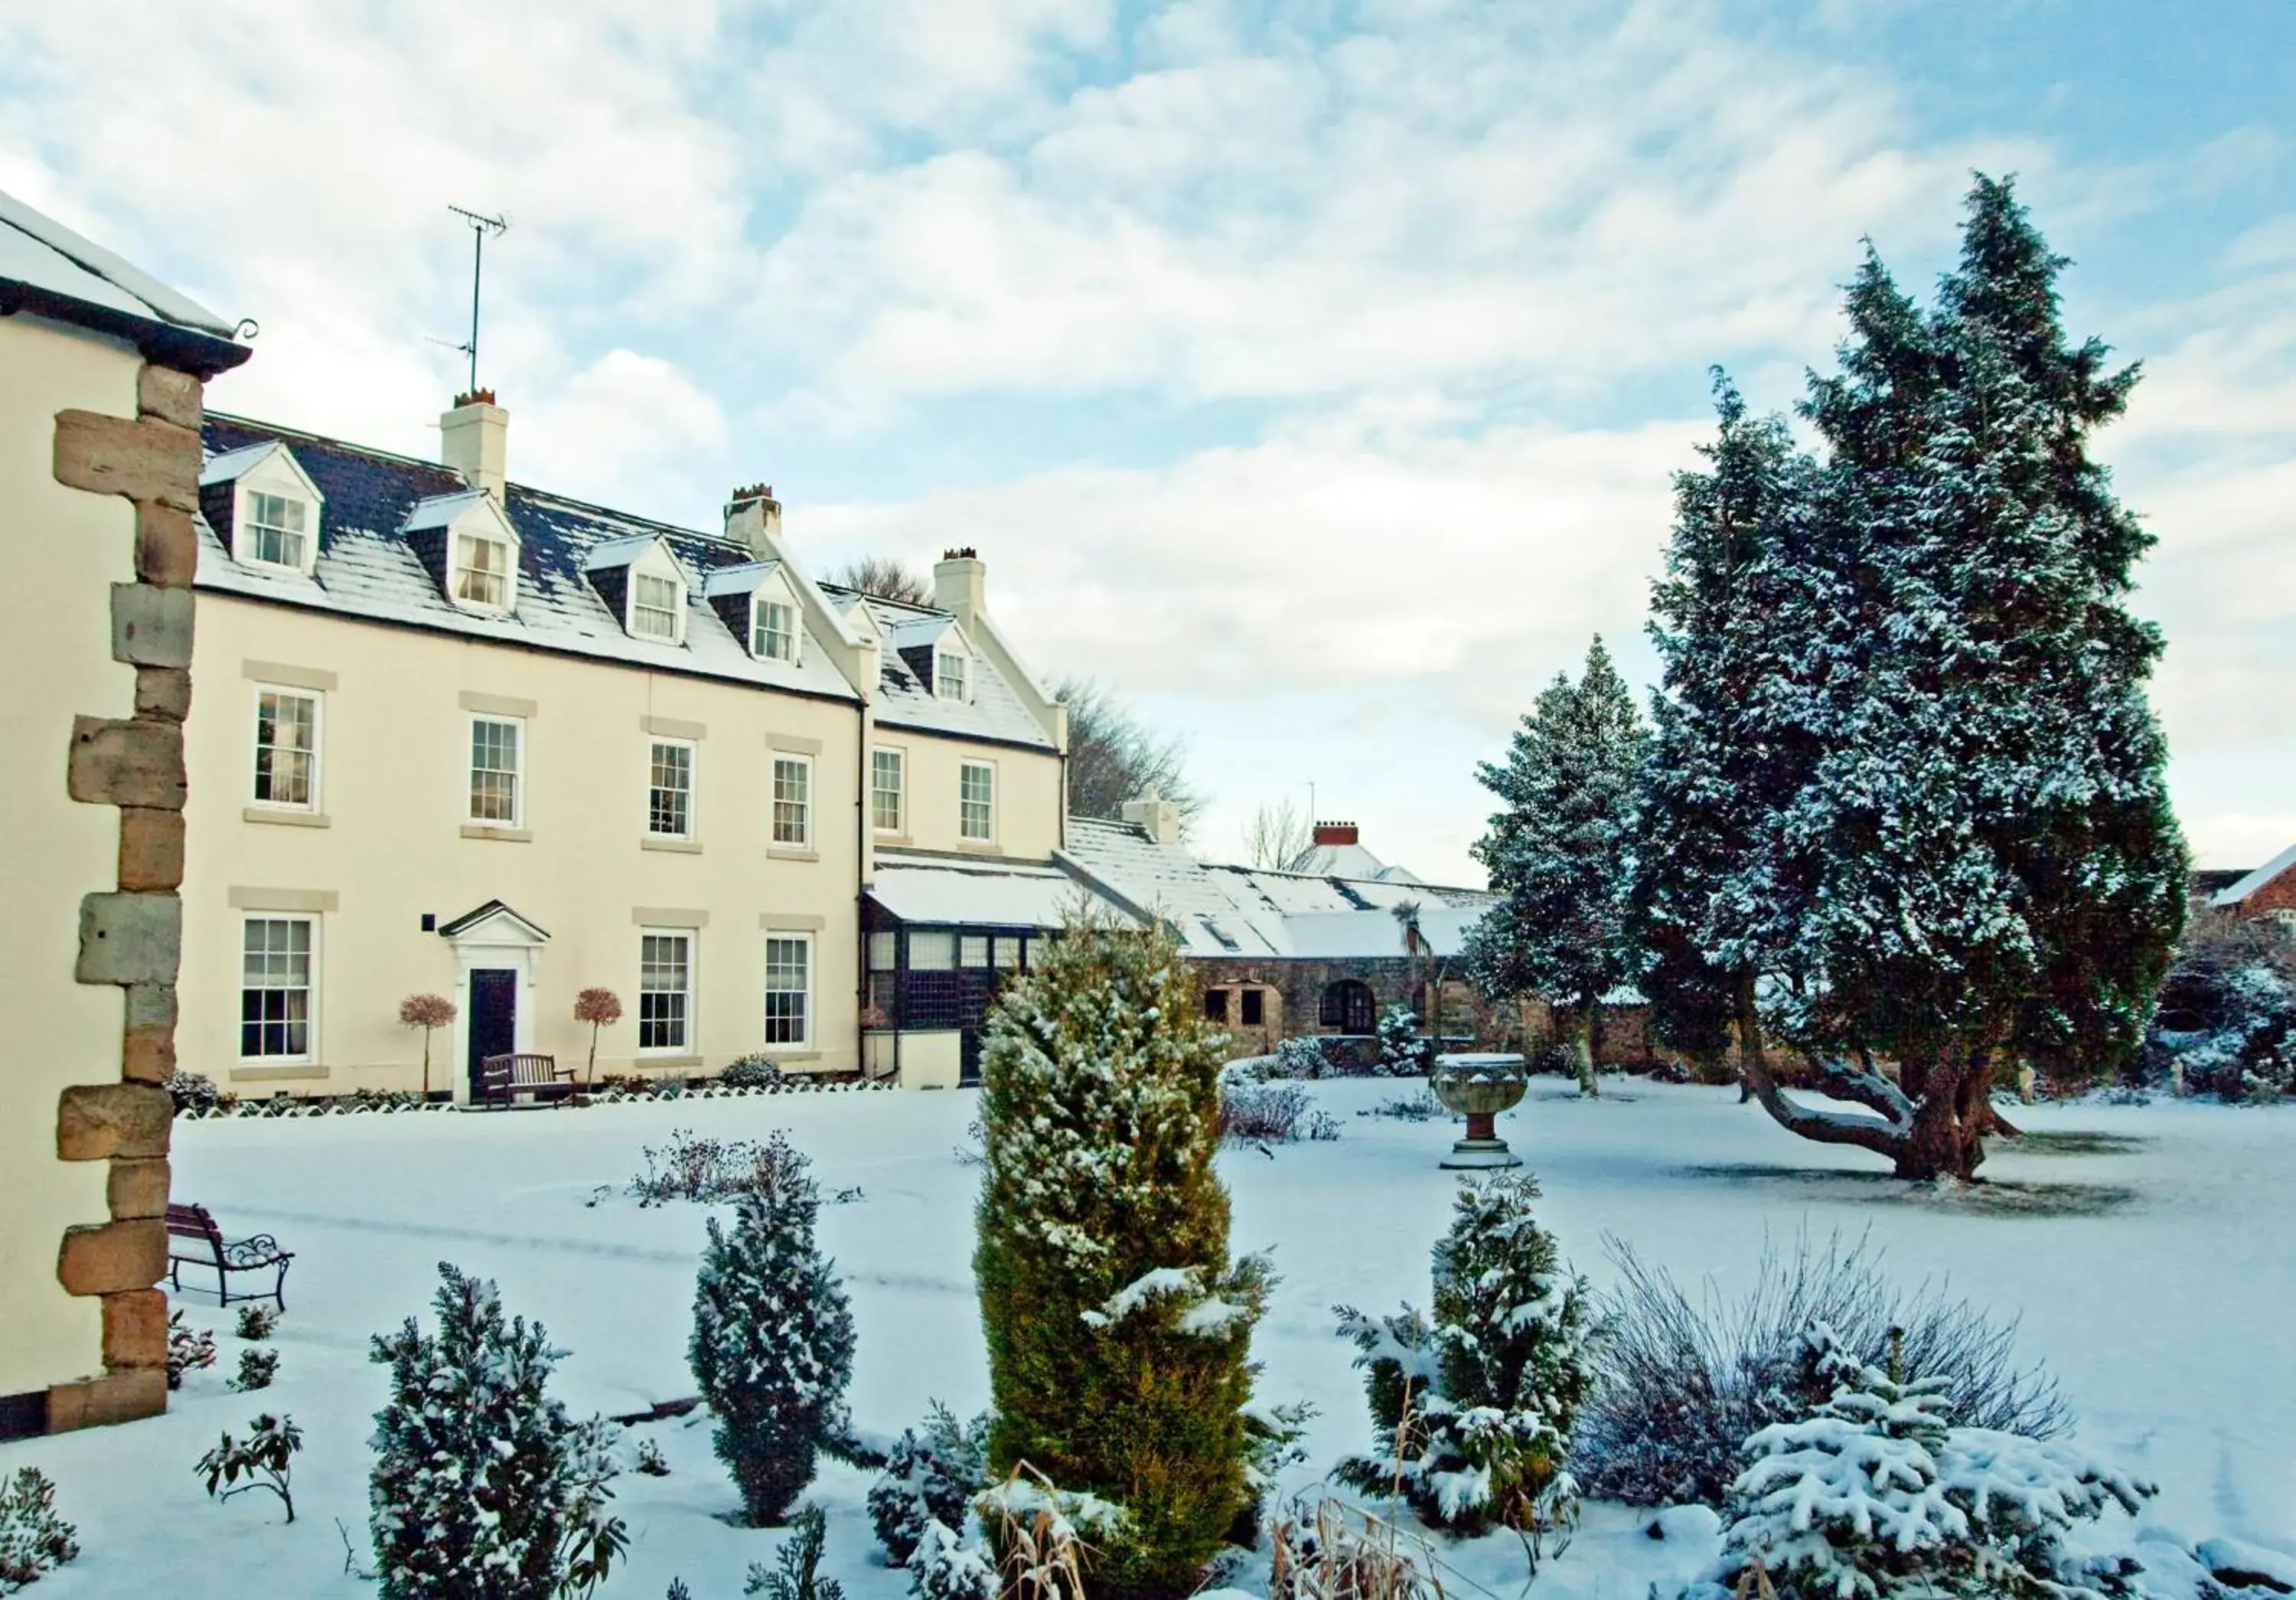 Facade/entrance, Winter in Hallgarth Manor House